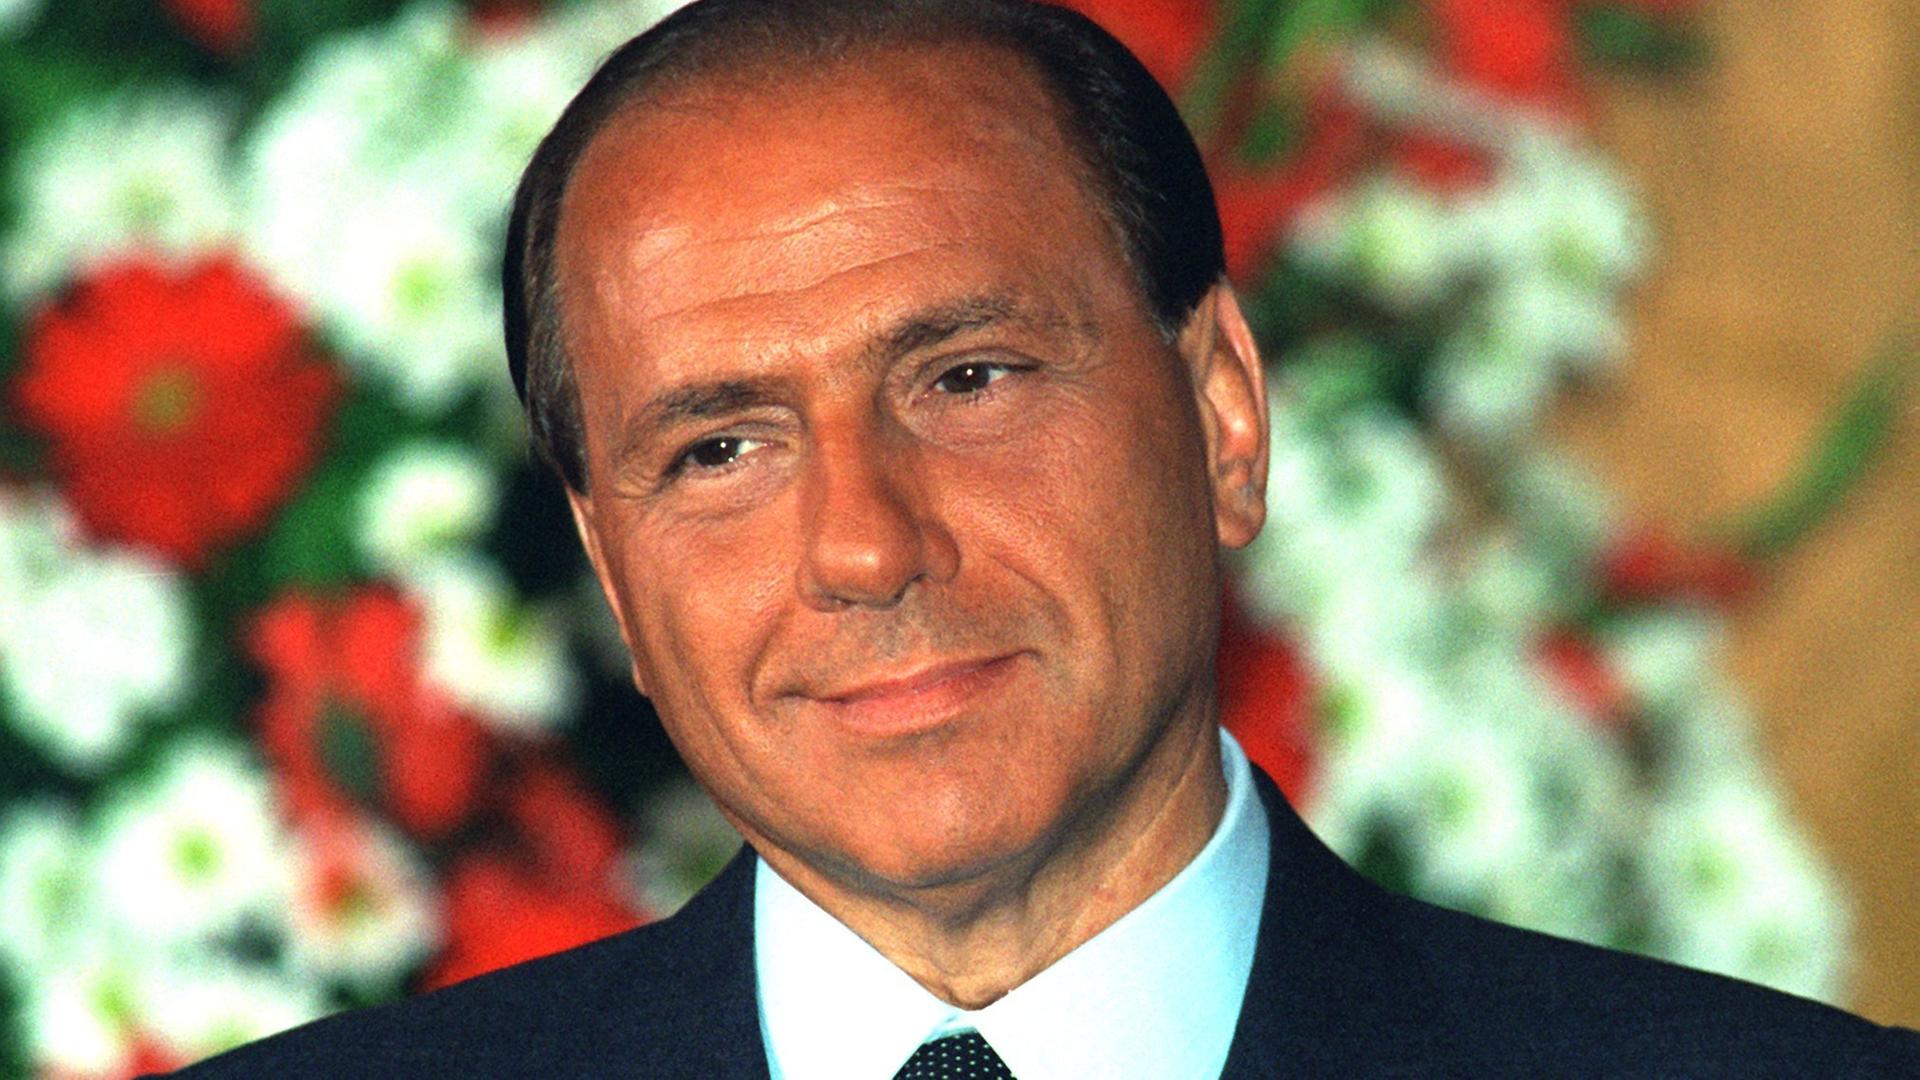 Der damalige italienische Ministerpräsident Silvio Berlusconi, aufgenommen während eines Deutschland-Besuchs am 16. Juni 1994 in Bonn.